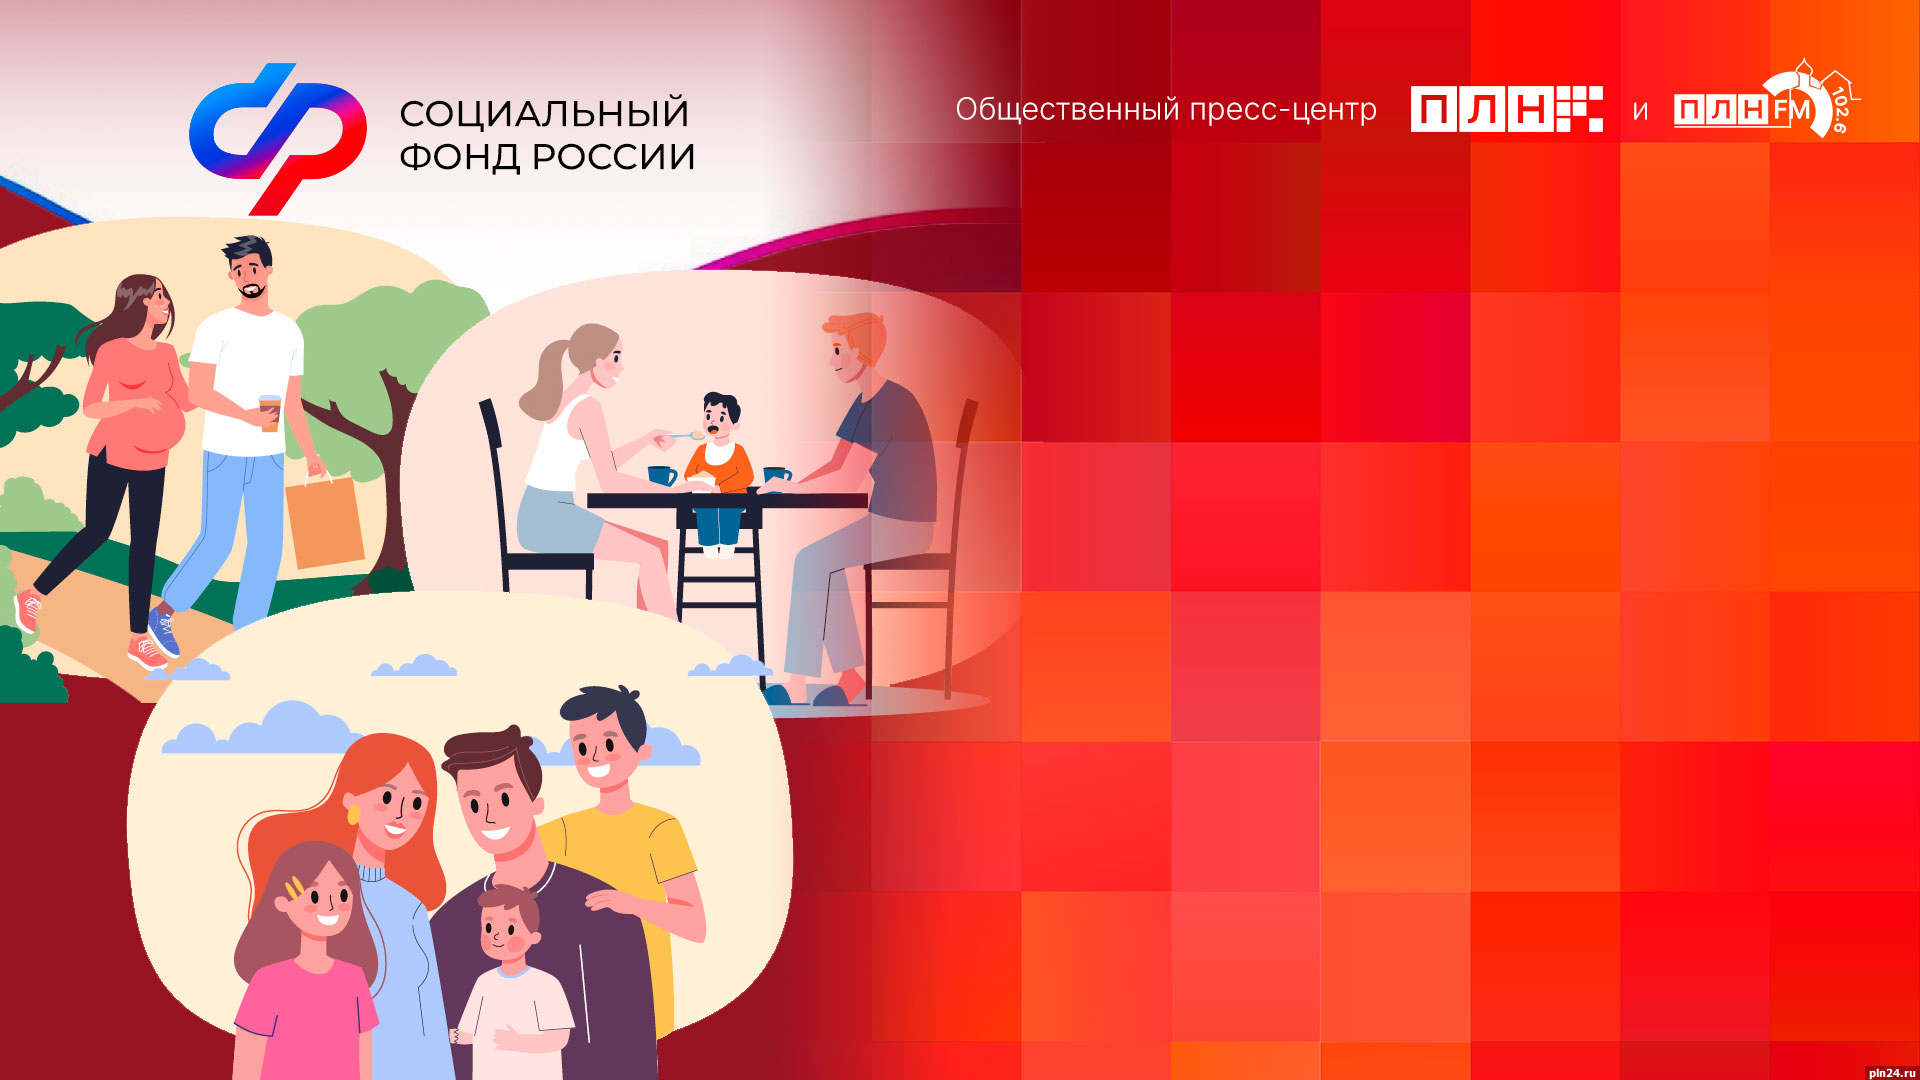 Начинается видеотрансляция онлайн-брифинга о господдержке семей с детьми в Псковской области